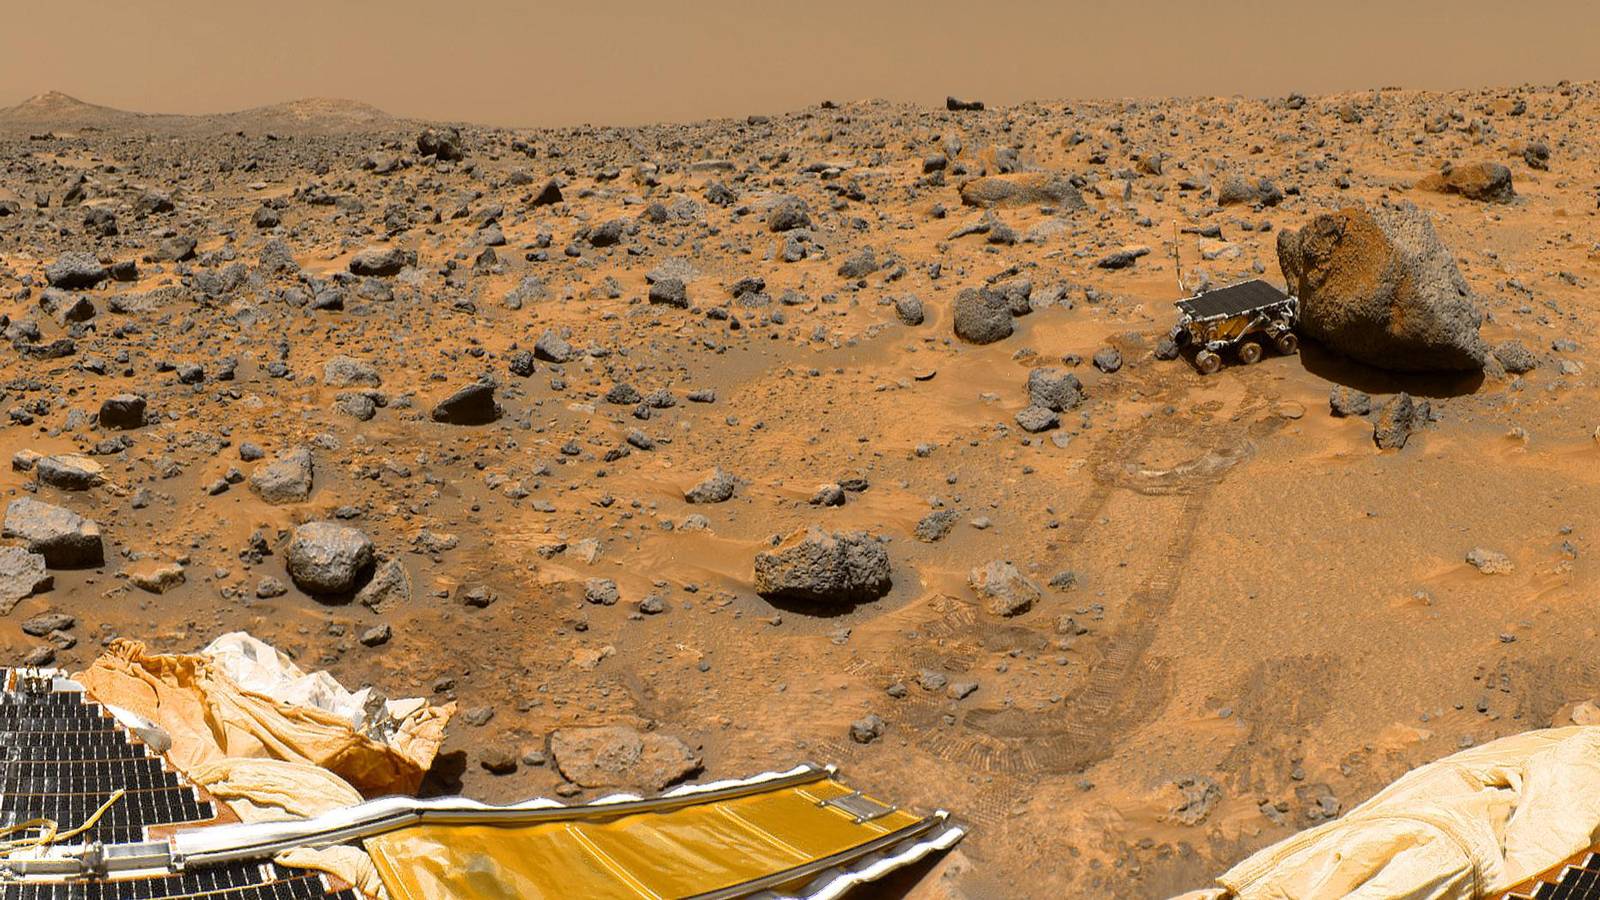 Planeetta Mars. PETTYVÄT uutiset ja HÄNYTTÄVÄ uusi kuva